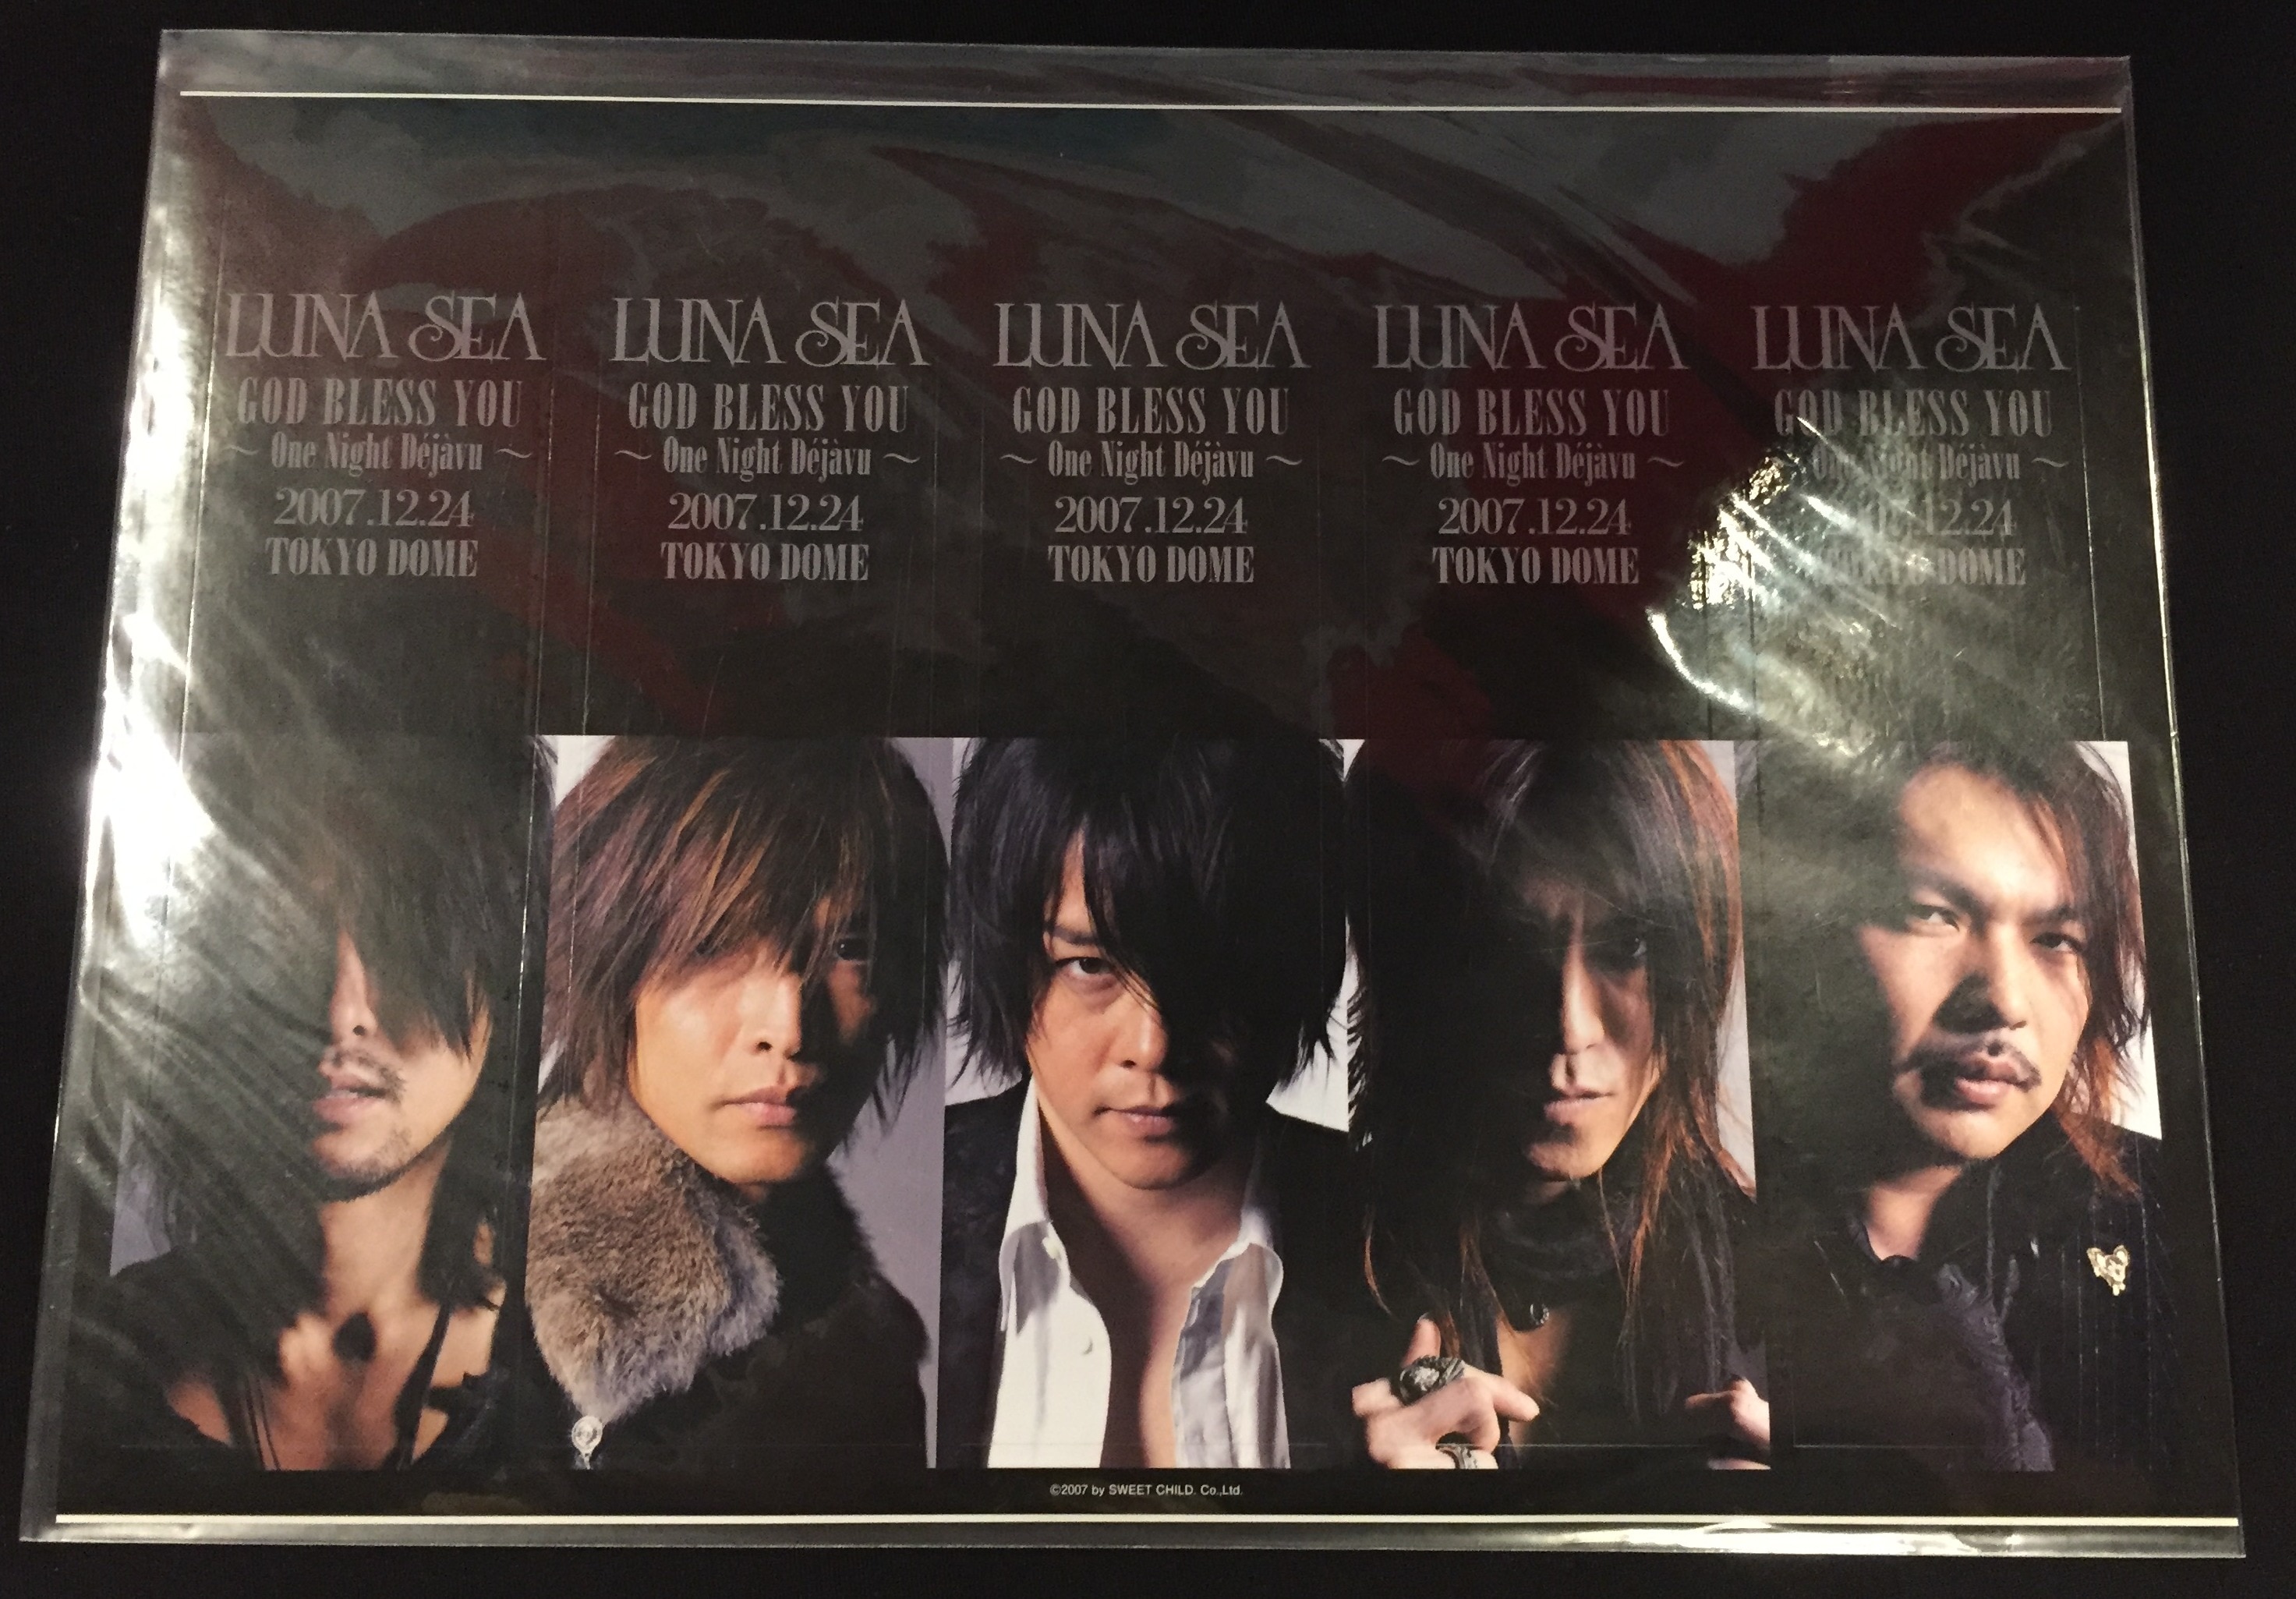 LUNA SEA GOD BLESS YOU~One Night Dejavu~2007.12.24 TOKYO DOME [DVD] 6g7v4d0